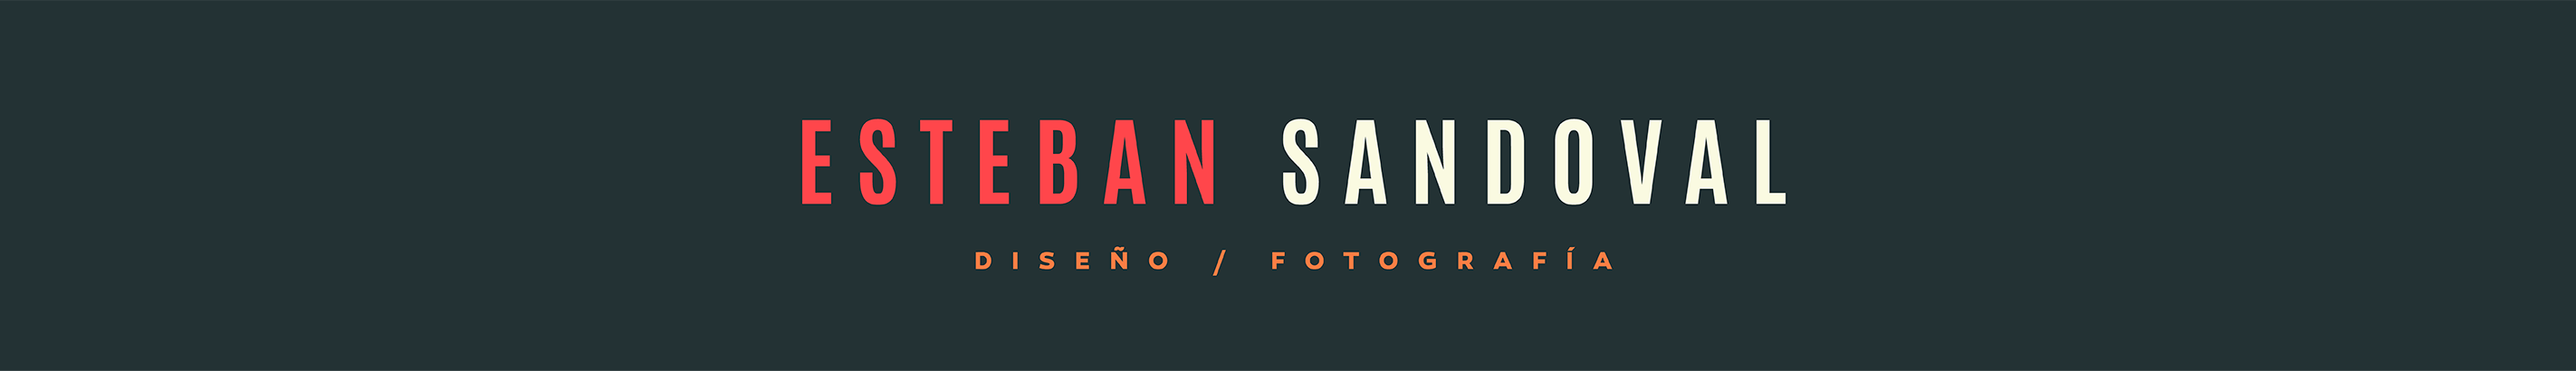 Esteban Sandoval Sequeira's profile banner